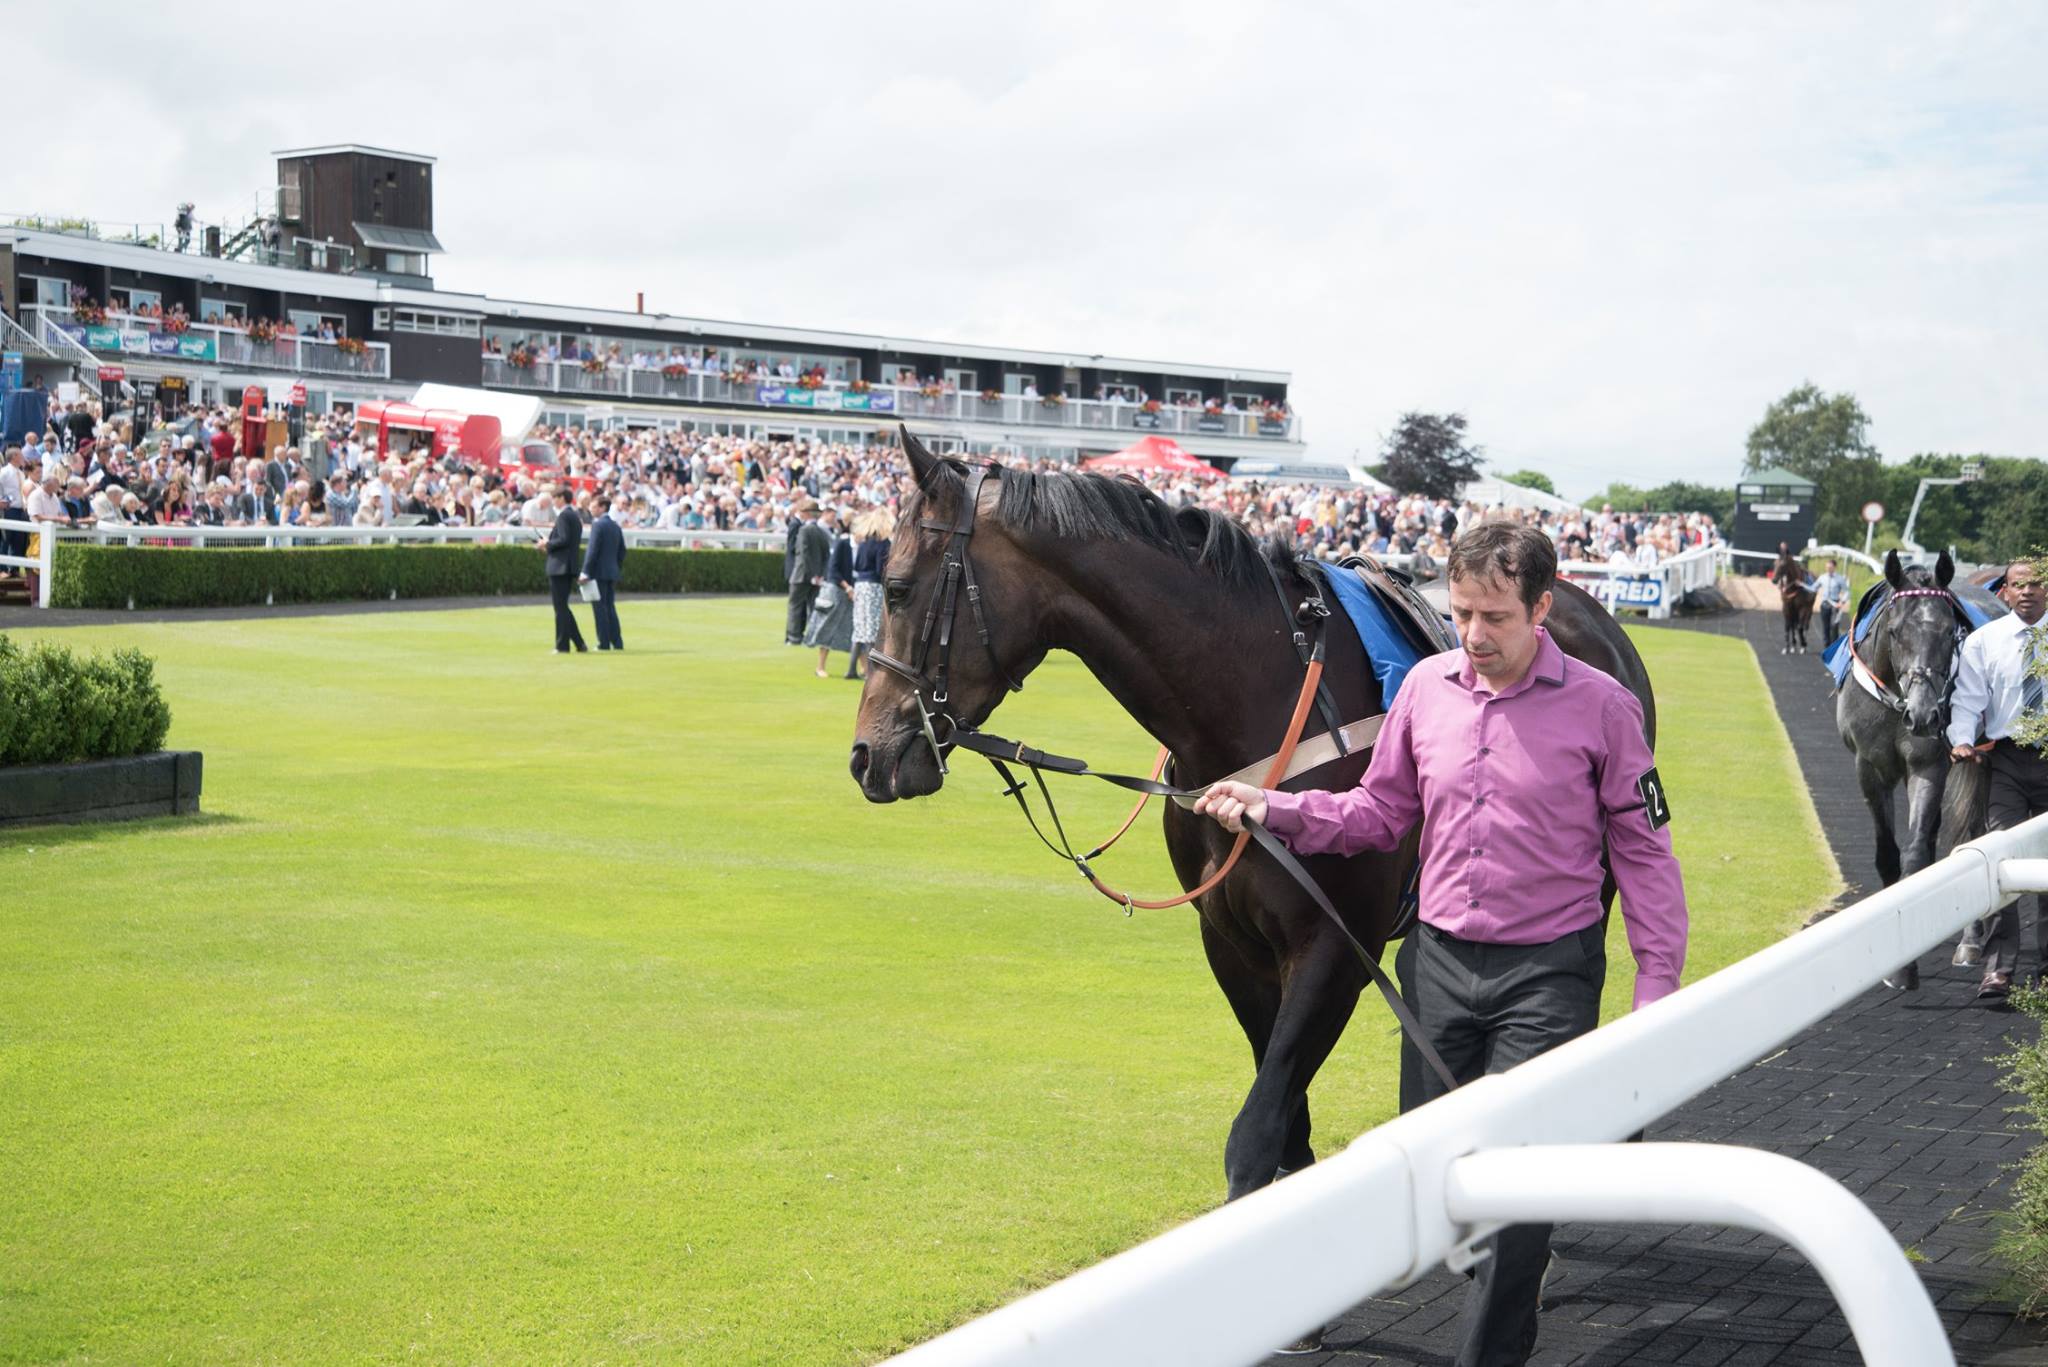 Horse racing returns to Market Rasen racecourse - photo by Simon O'Neill